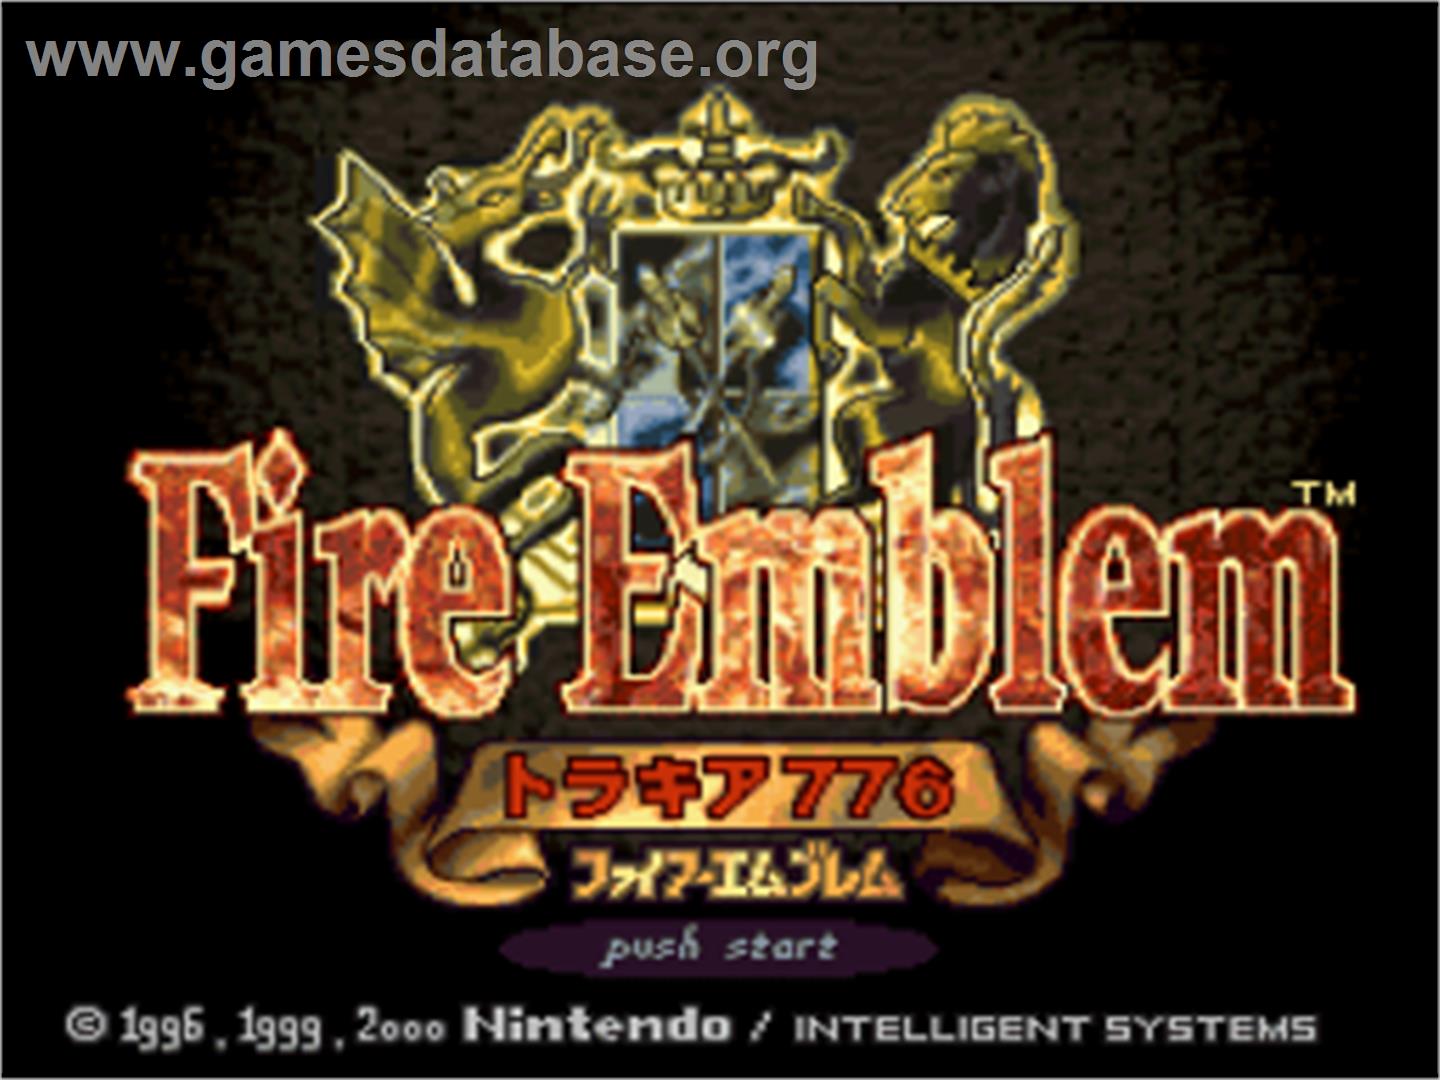 Fire Emblem: Thracia 776 - Nintendo SNES - Artwork - Title Screen